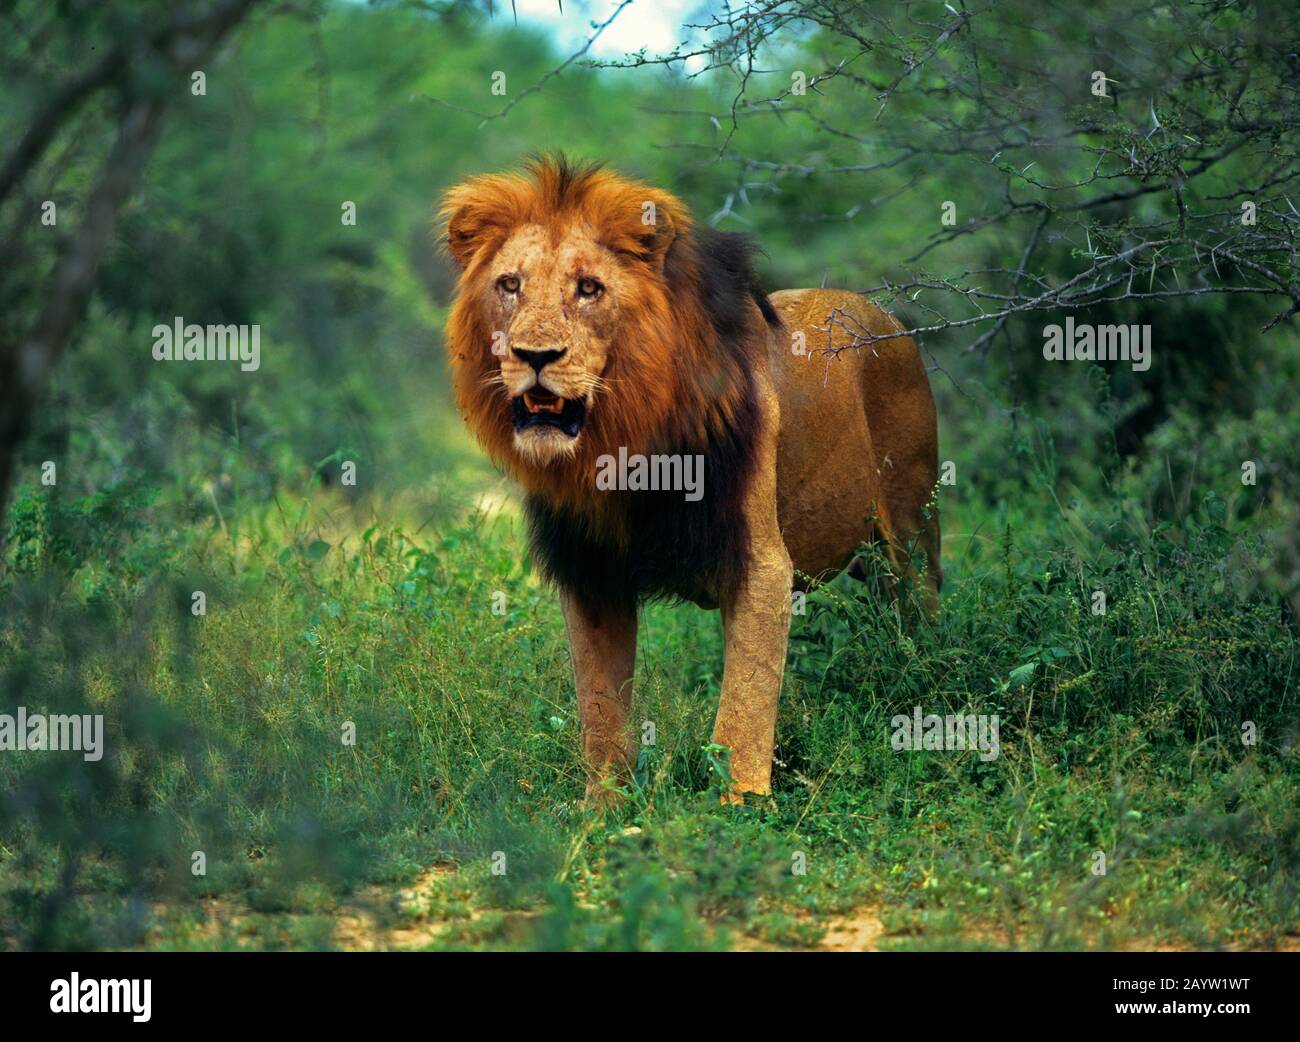 Lion (Panthera leo), lion masculin debout dans le shrubland, vue de face, Afrique Banque D'Images